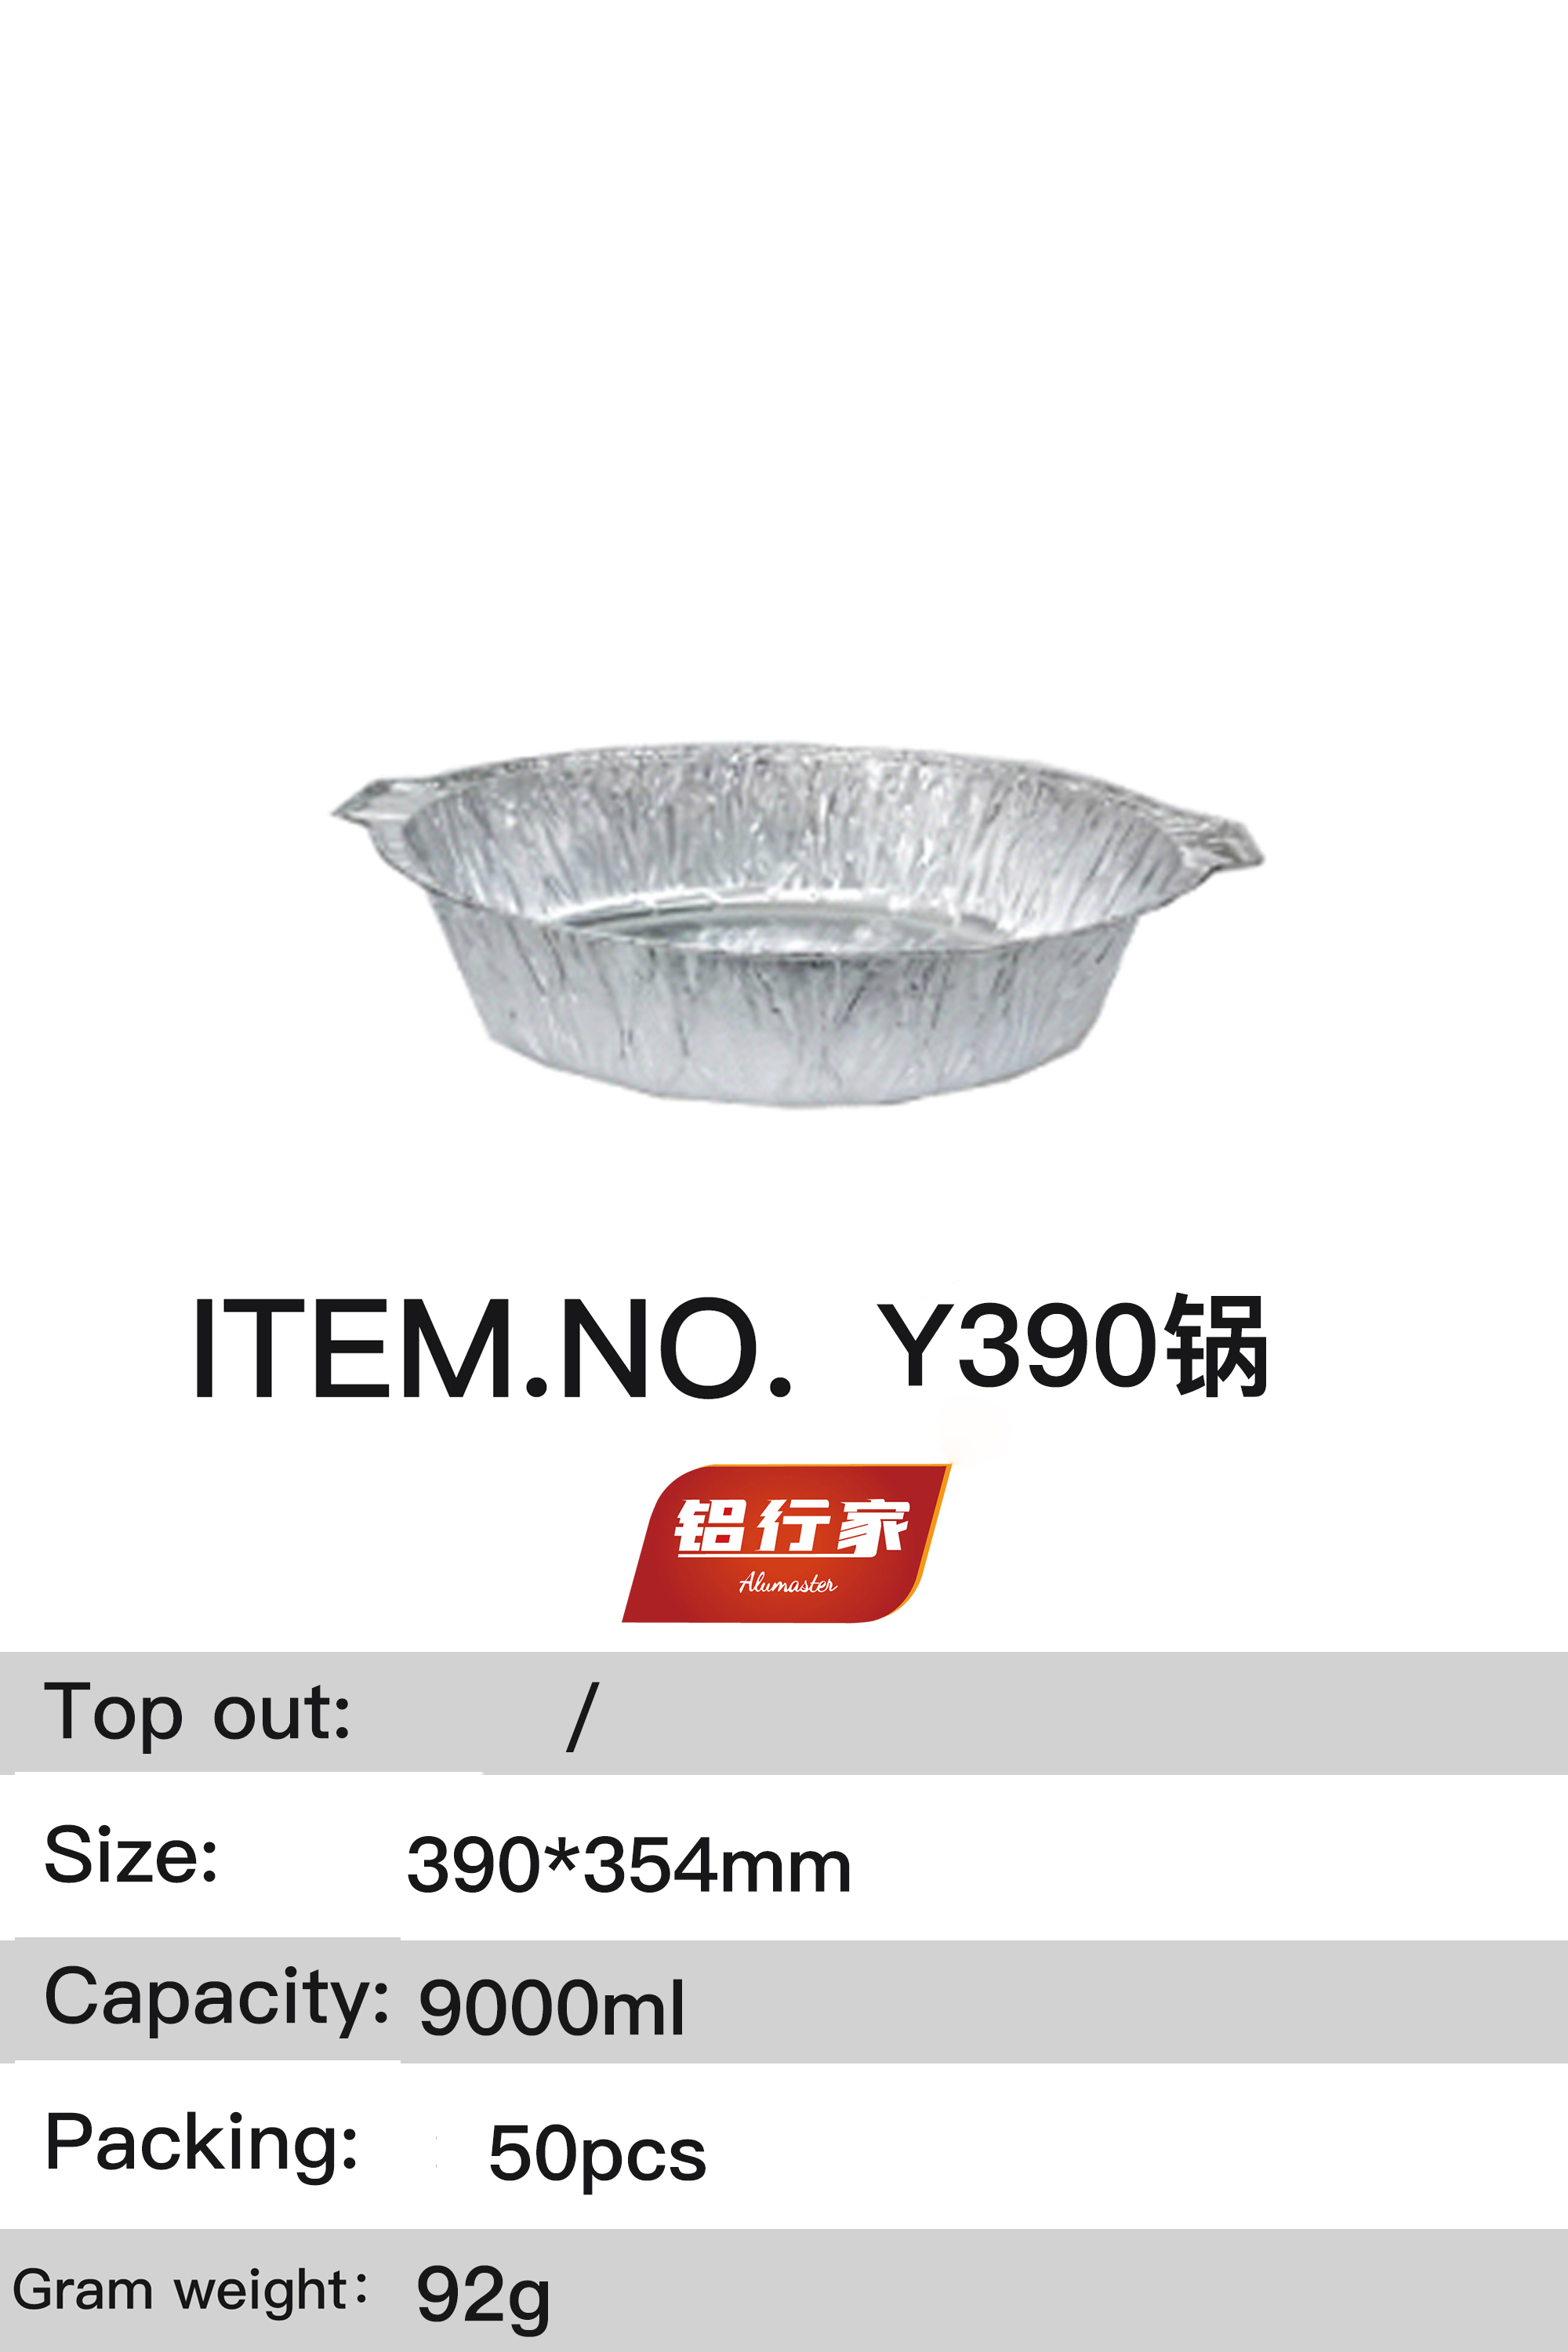 铝行家铝箔餐盒Y390锅